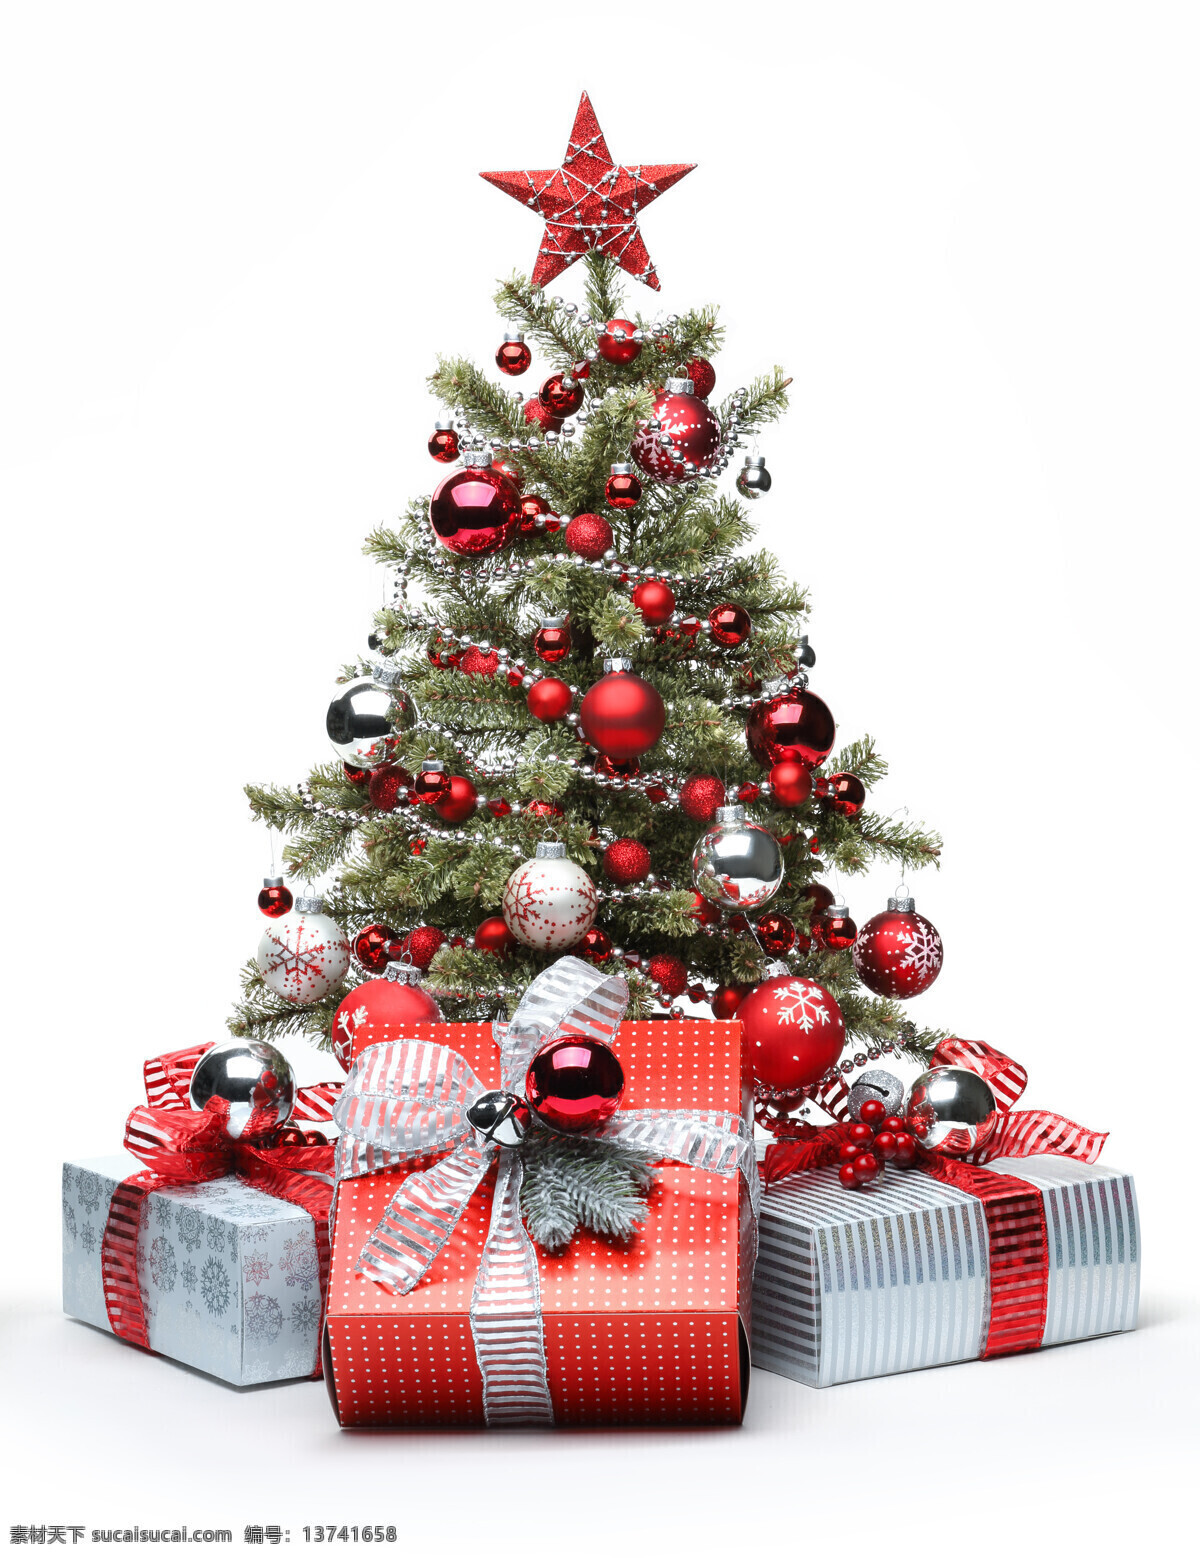 美丽 圣诞 树下 礼物 盒 圣诞树 装饰品 圣诞节 蝴蝶结 礼物盒 节日庆典 生活百科